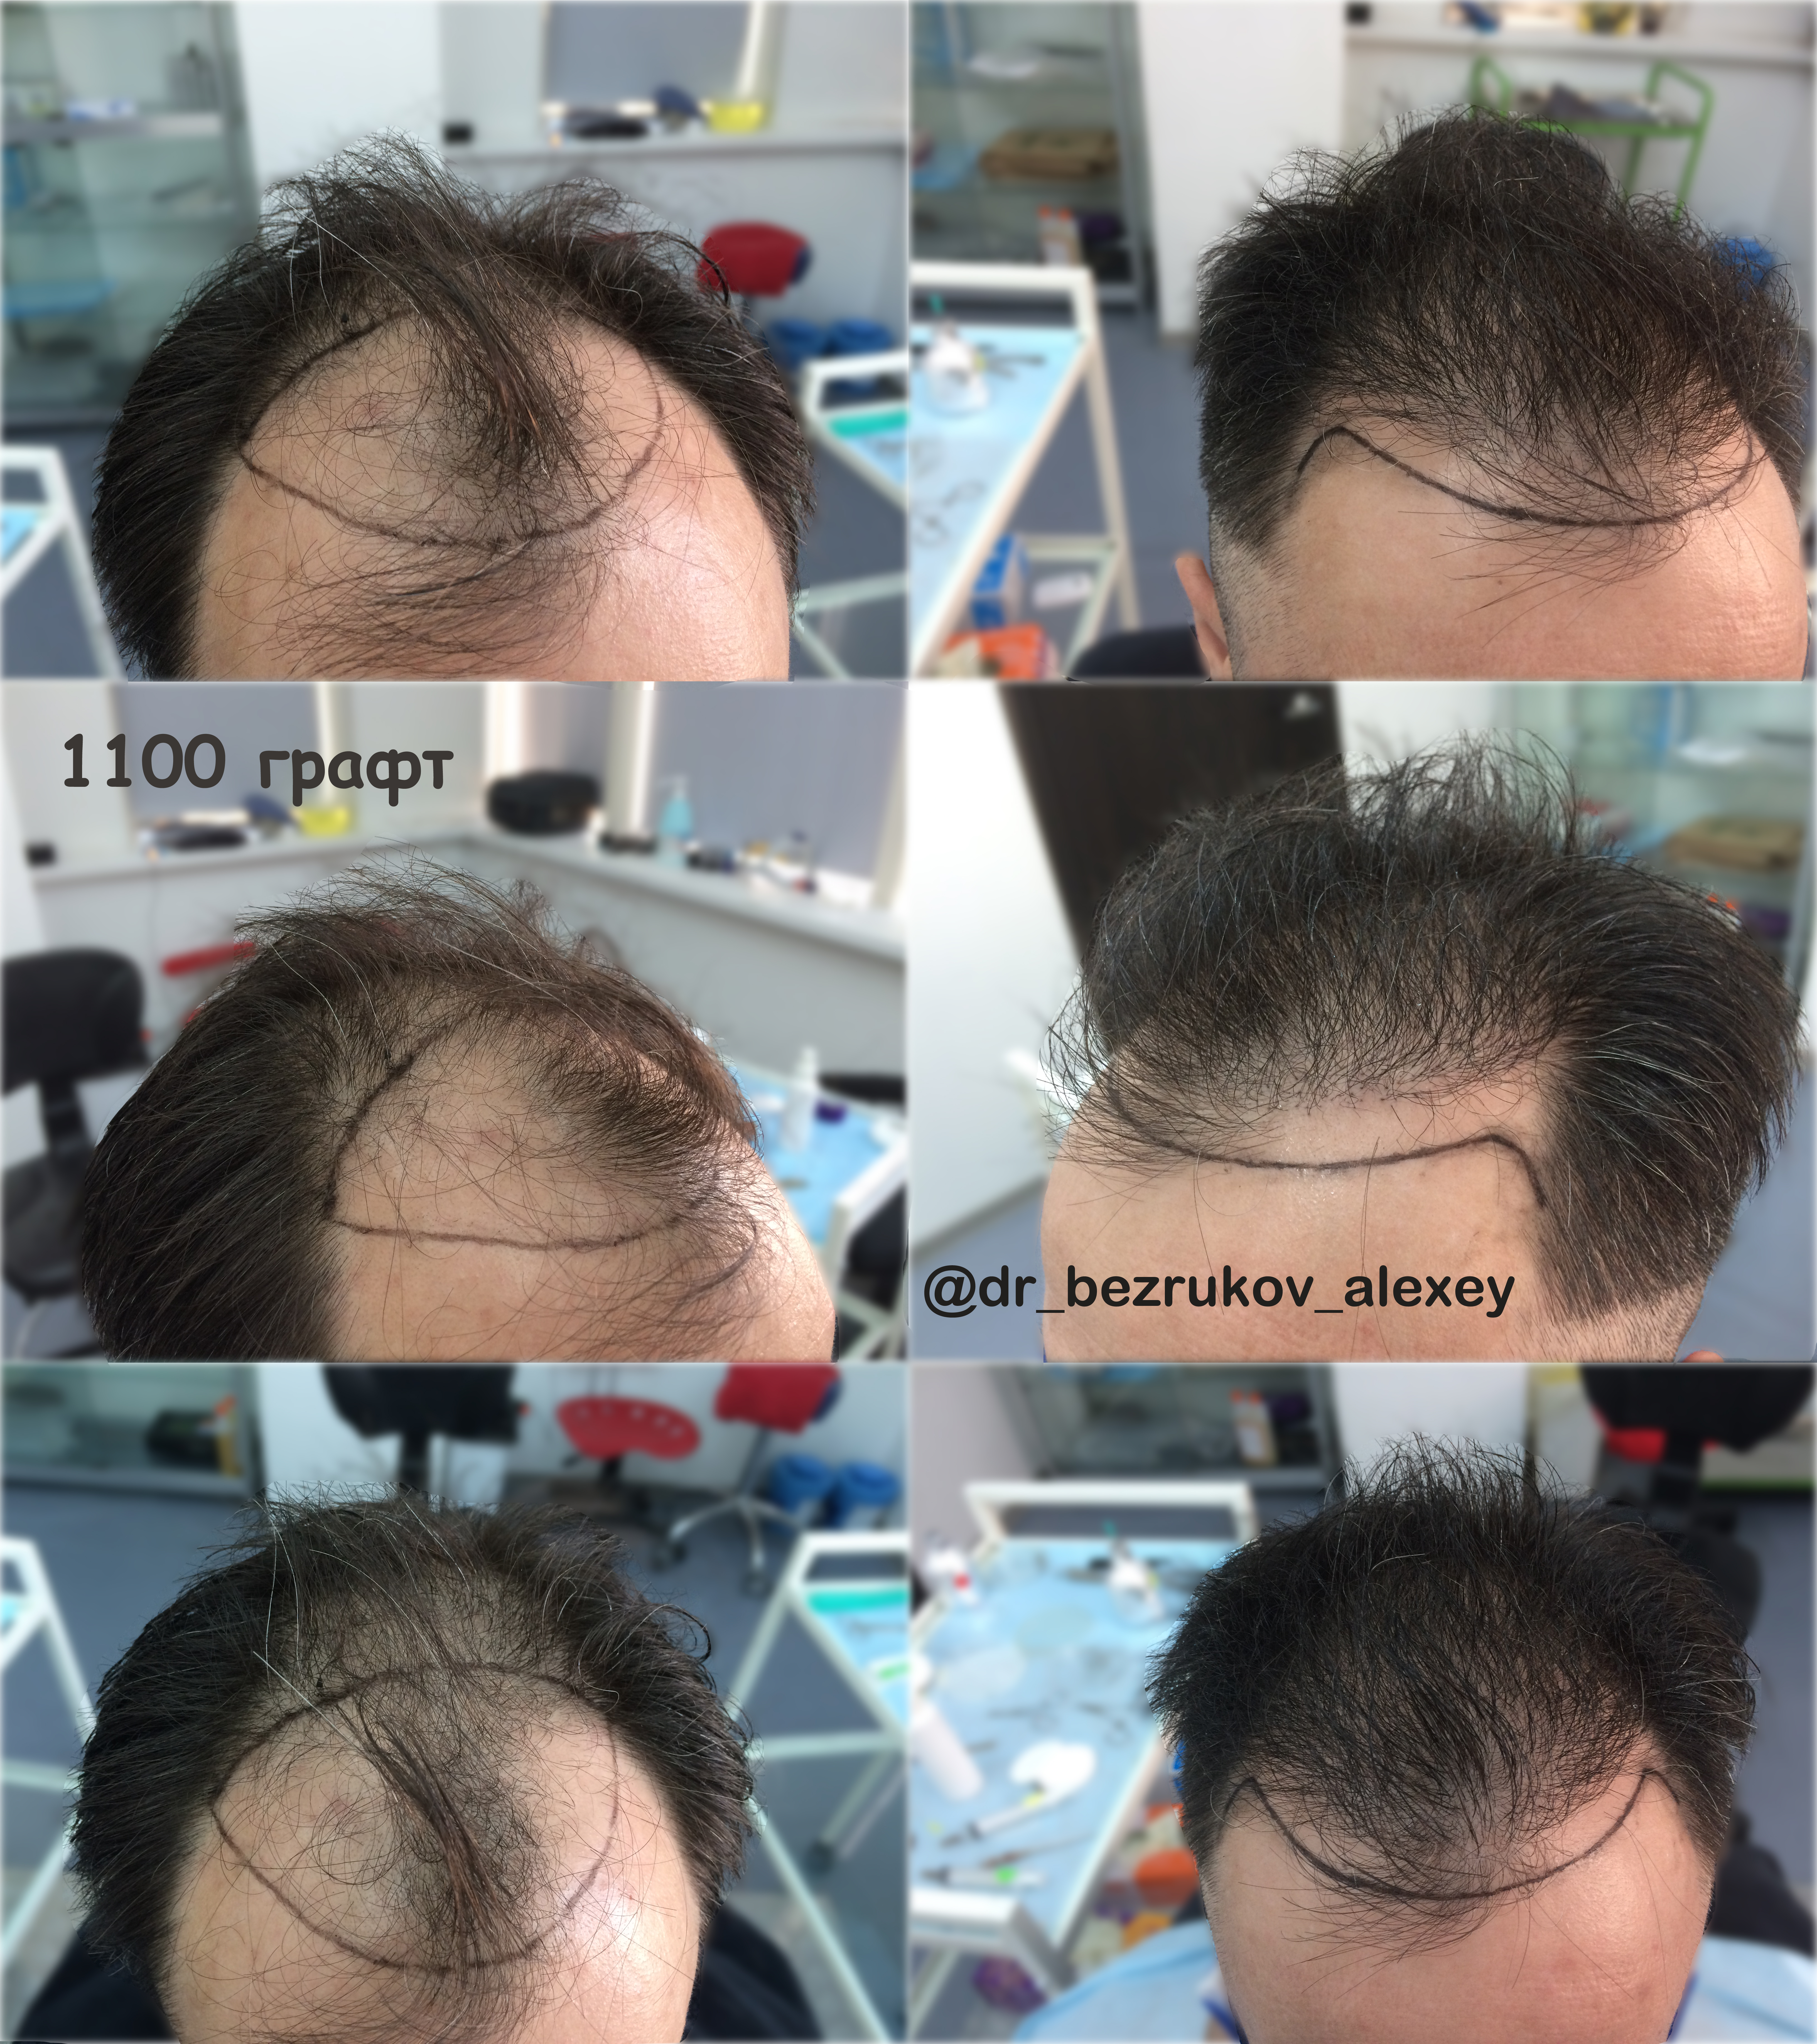 Пересадка графта. Графт трансплантация волос. Пересадка волос графтов. До и после пересадки волос.